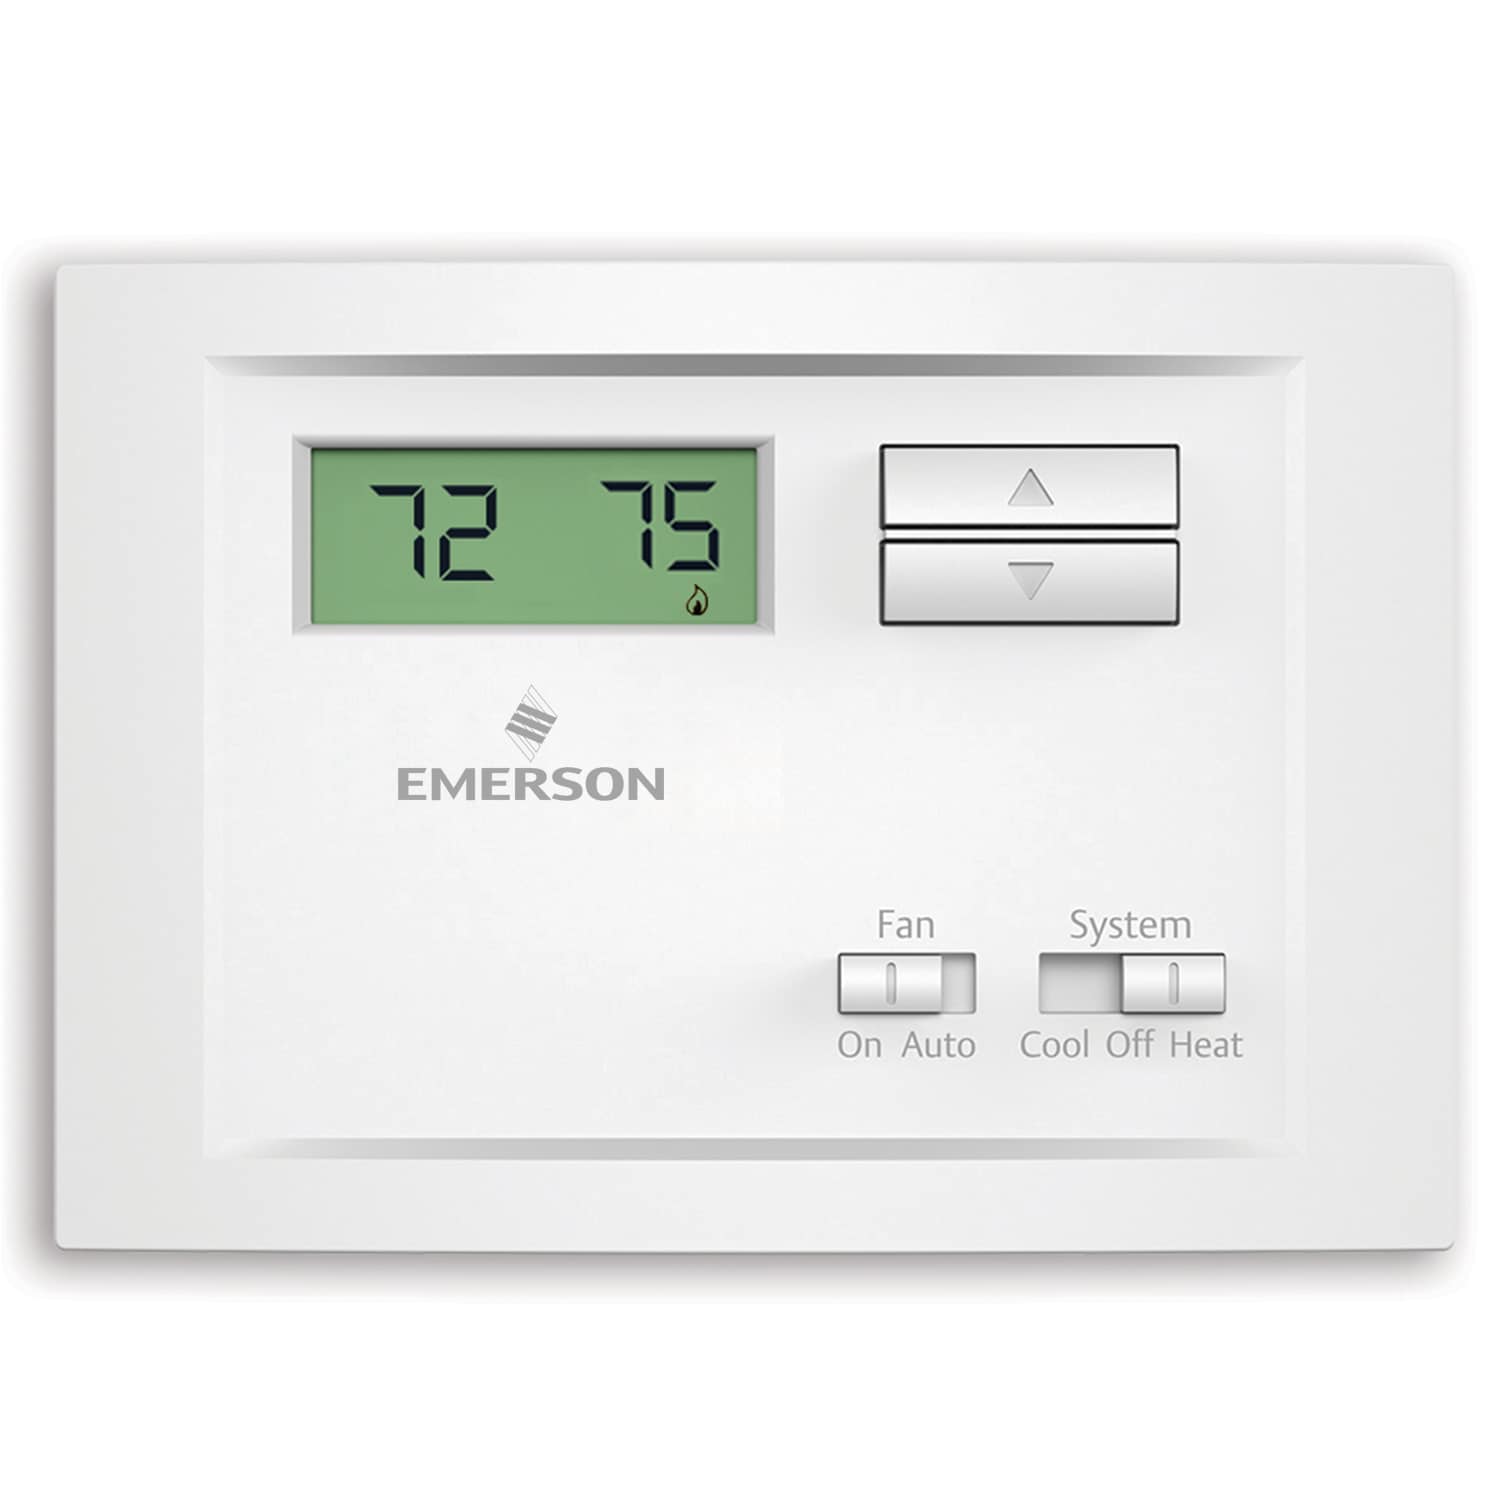 Thermostat Model T20-B4B11  Non-Prog Heat Cool Thermostat Heat Pump NEW